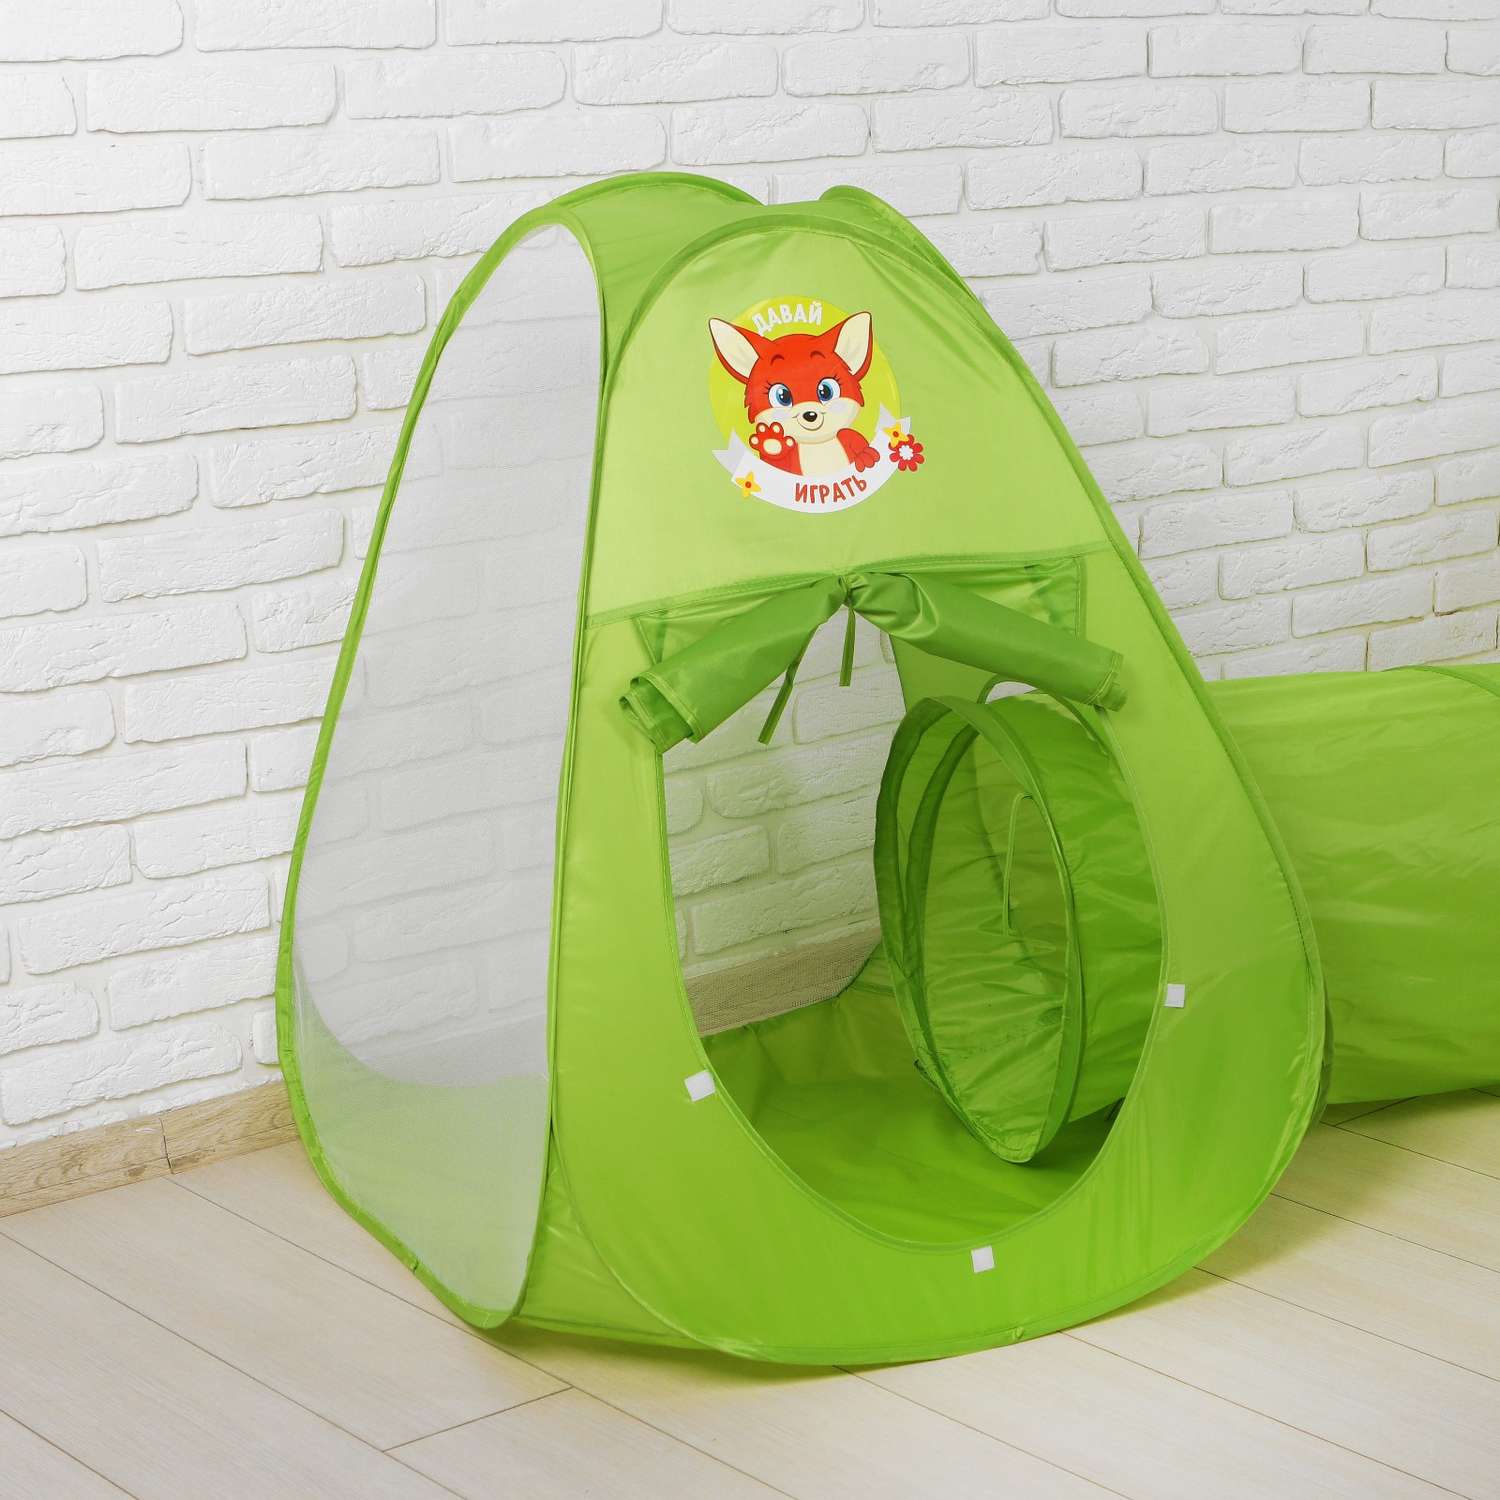 Игровая палатка Школа Талантов Давай играть с туннелем цвет зеленый - фото 3